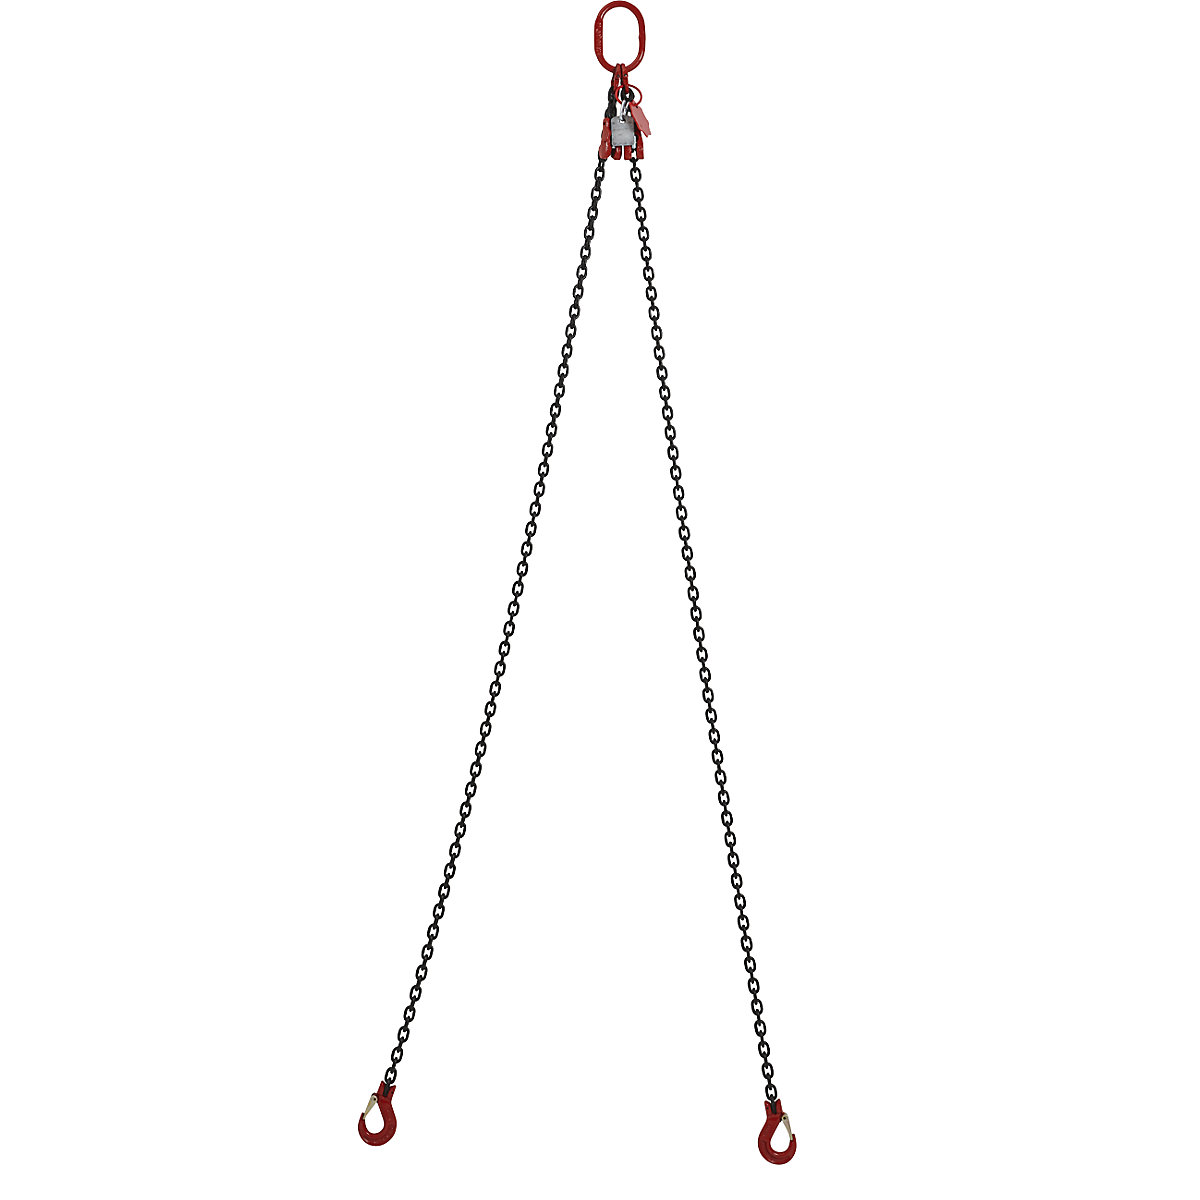 GK8 chain sling